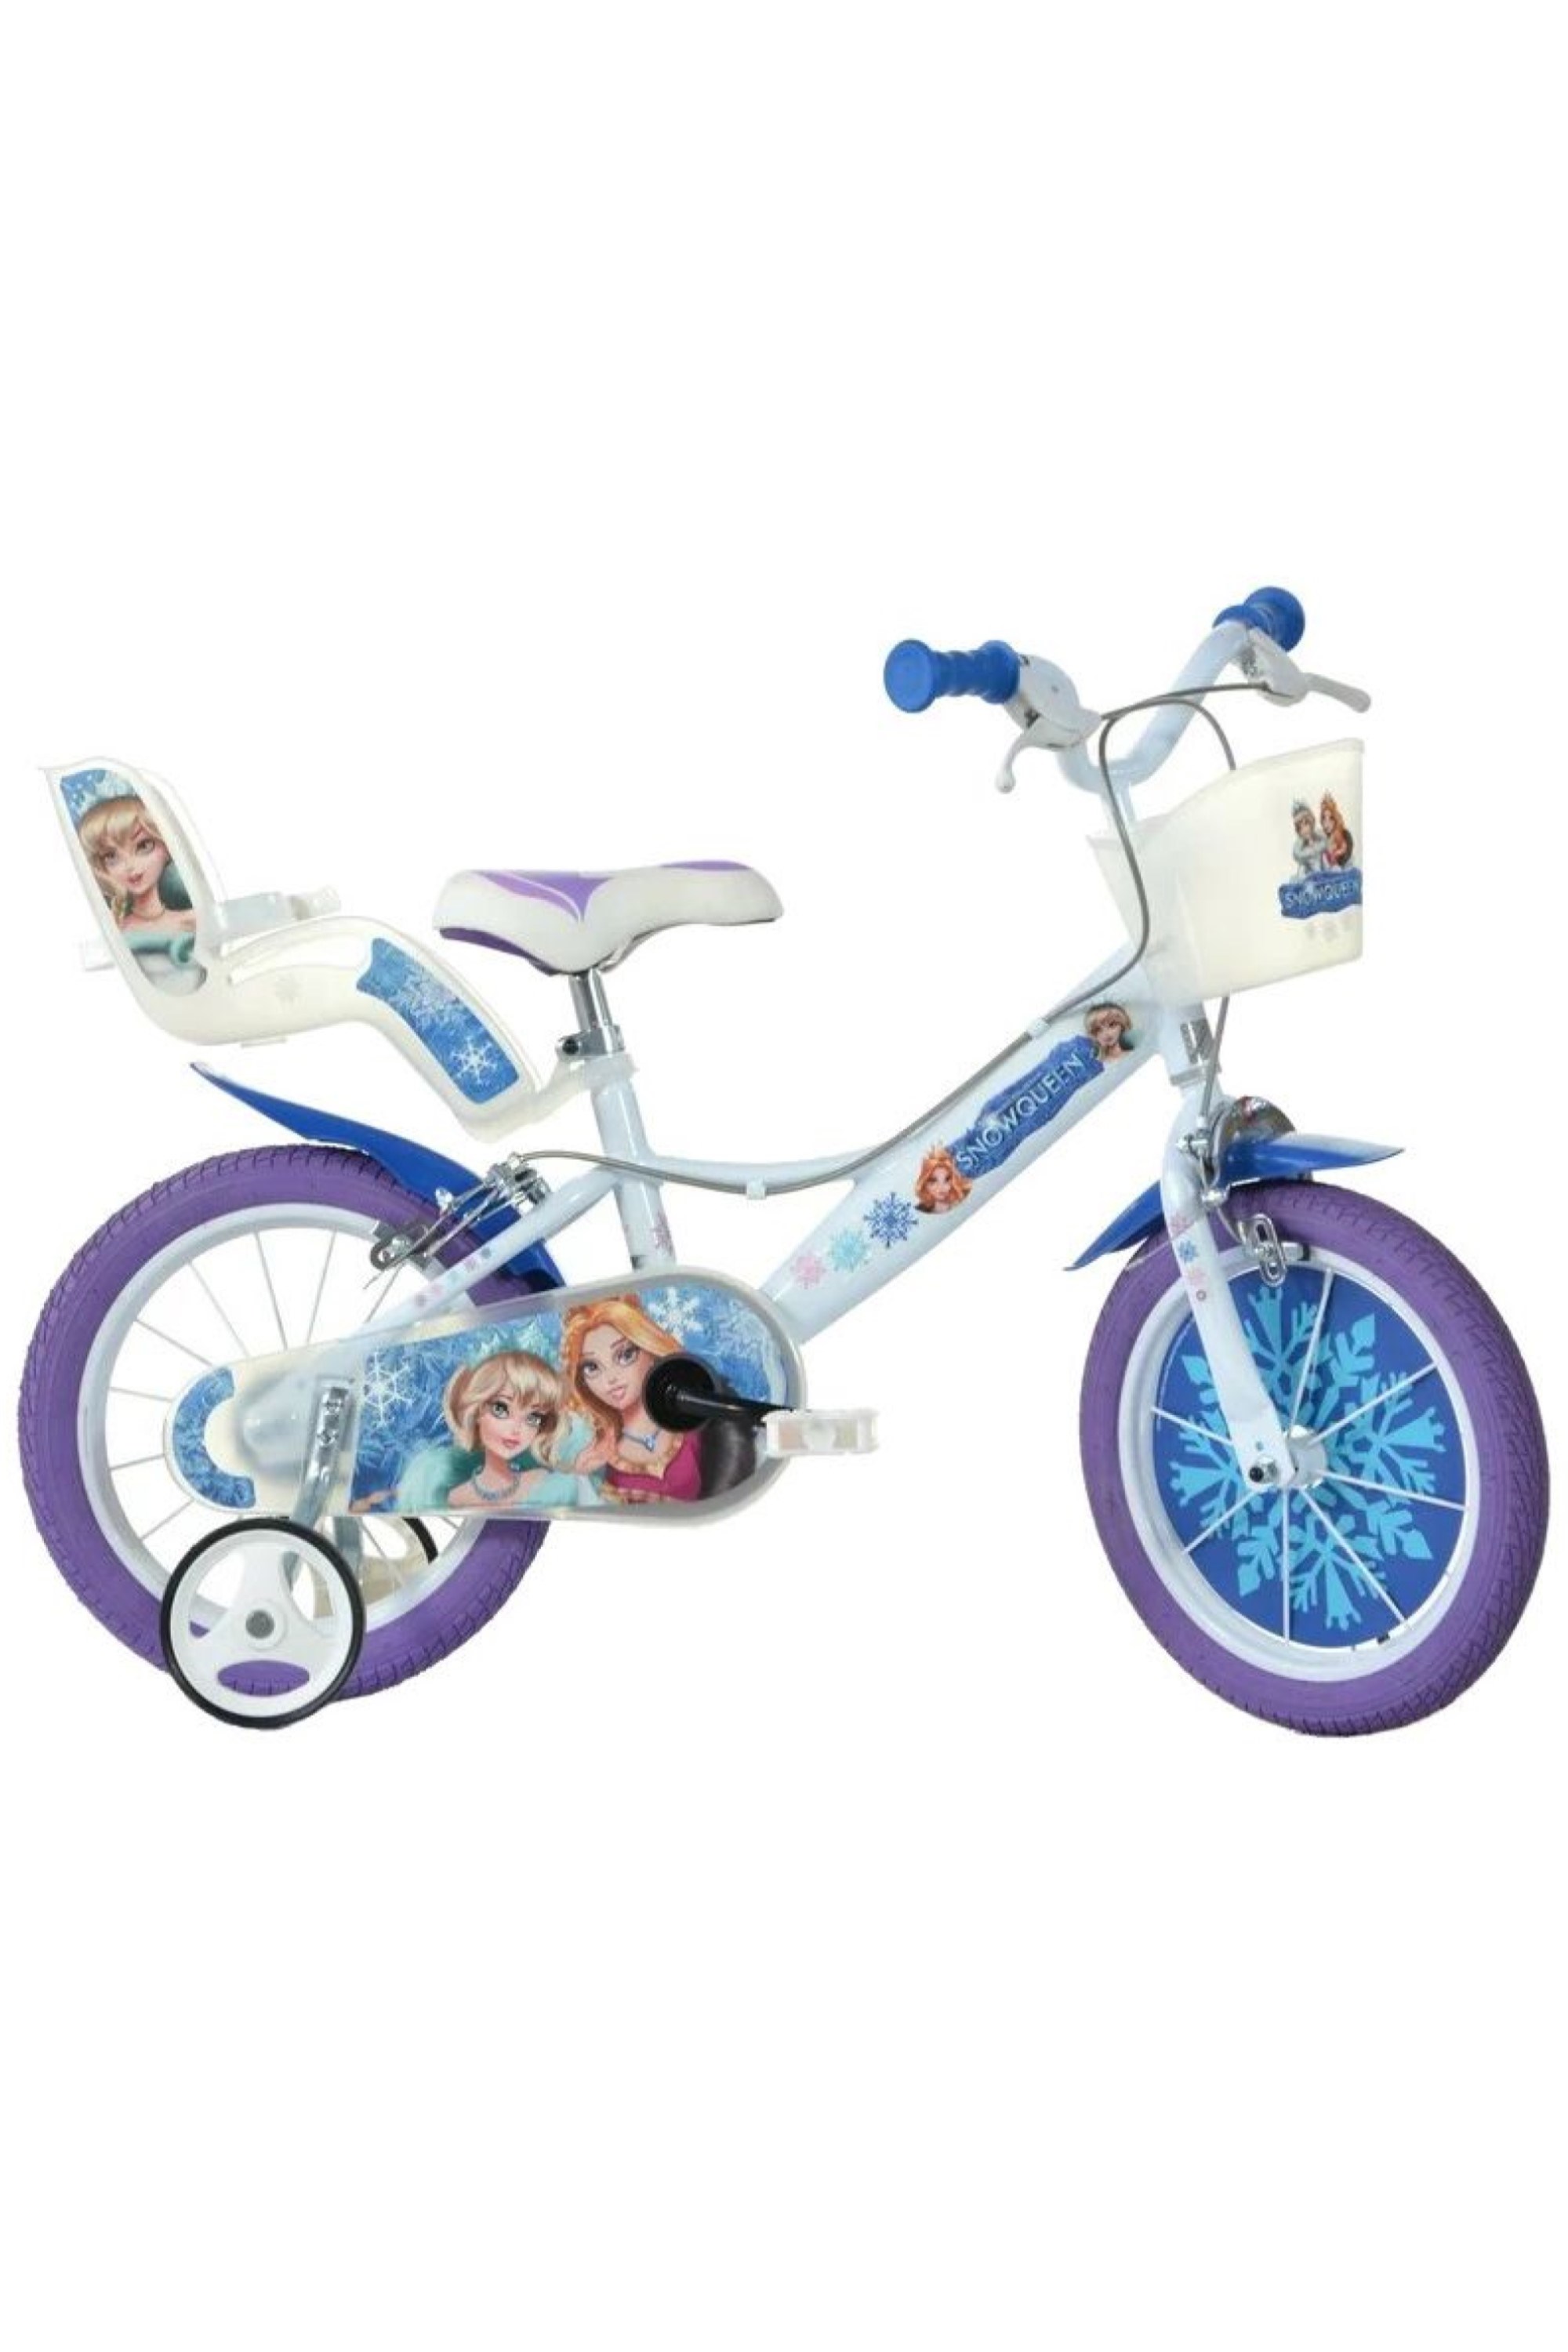 Snow Queen 14" Kids Bike -